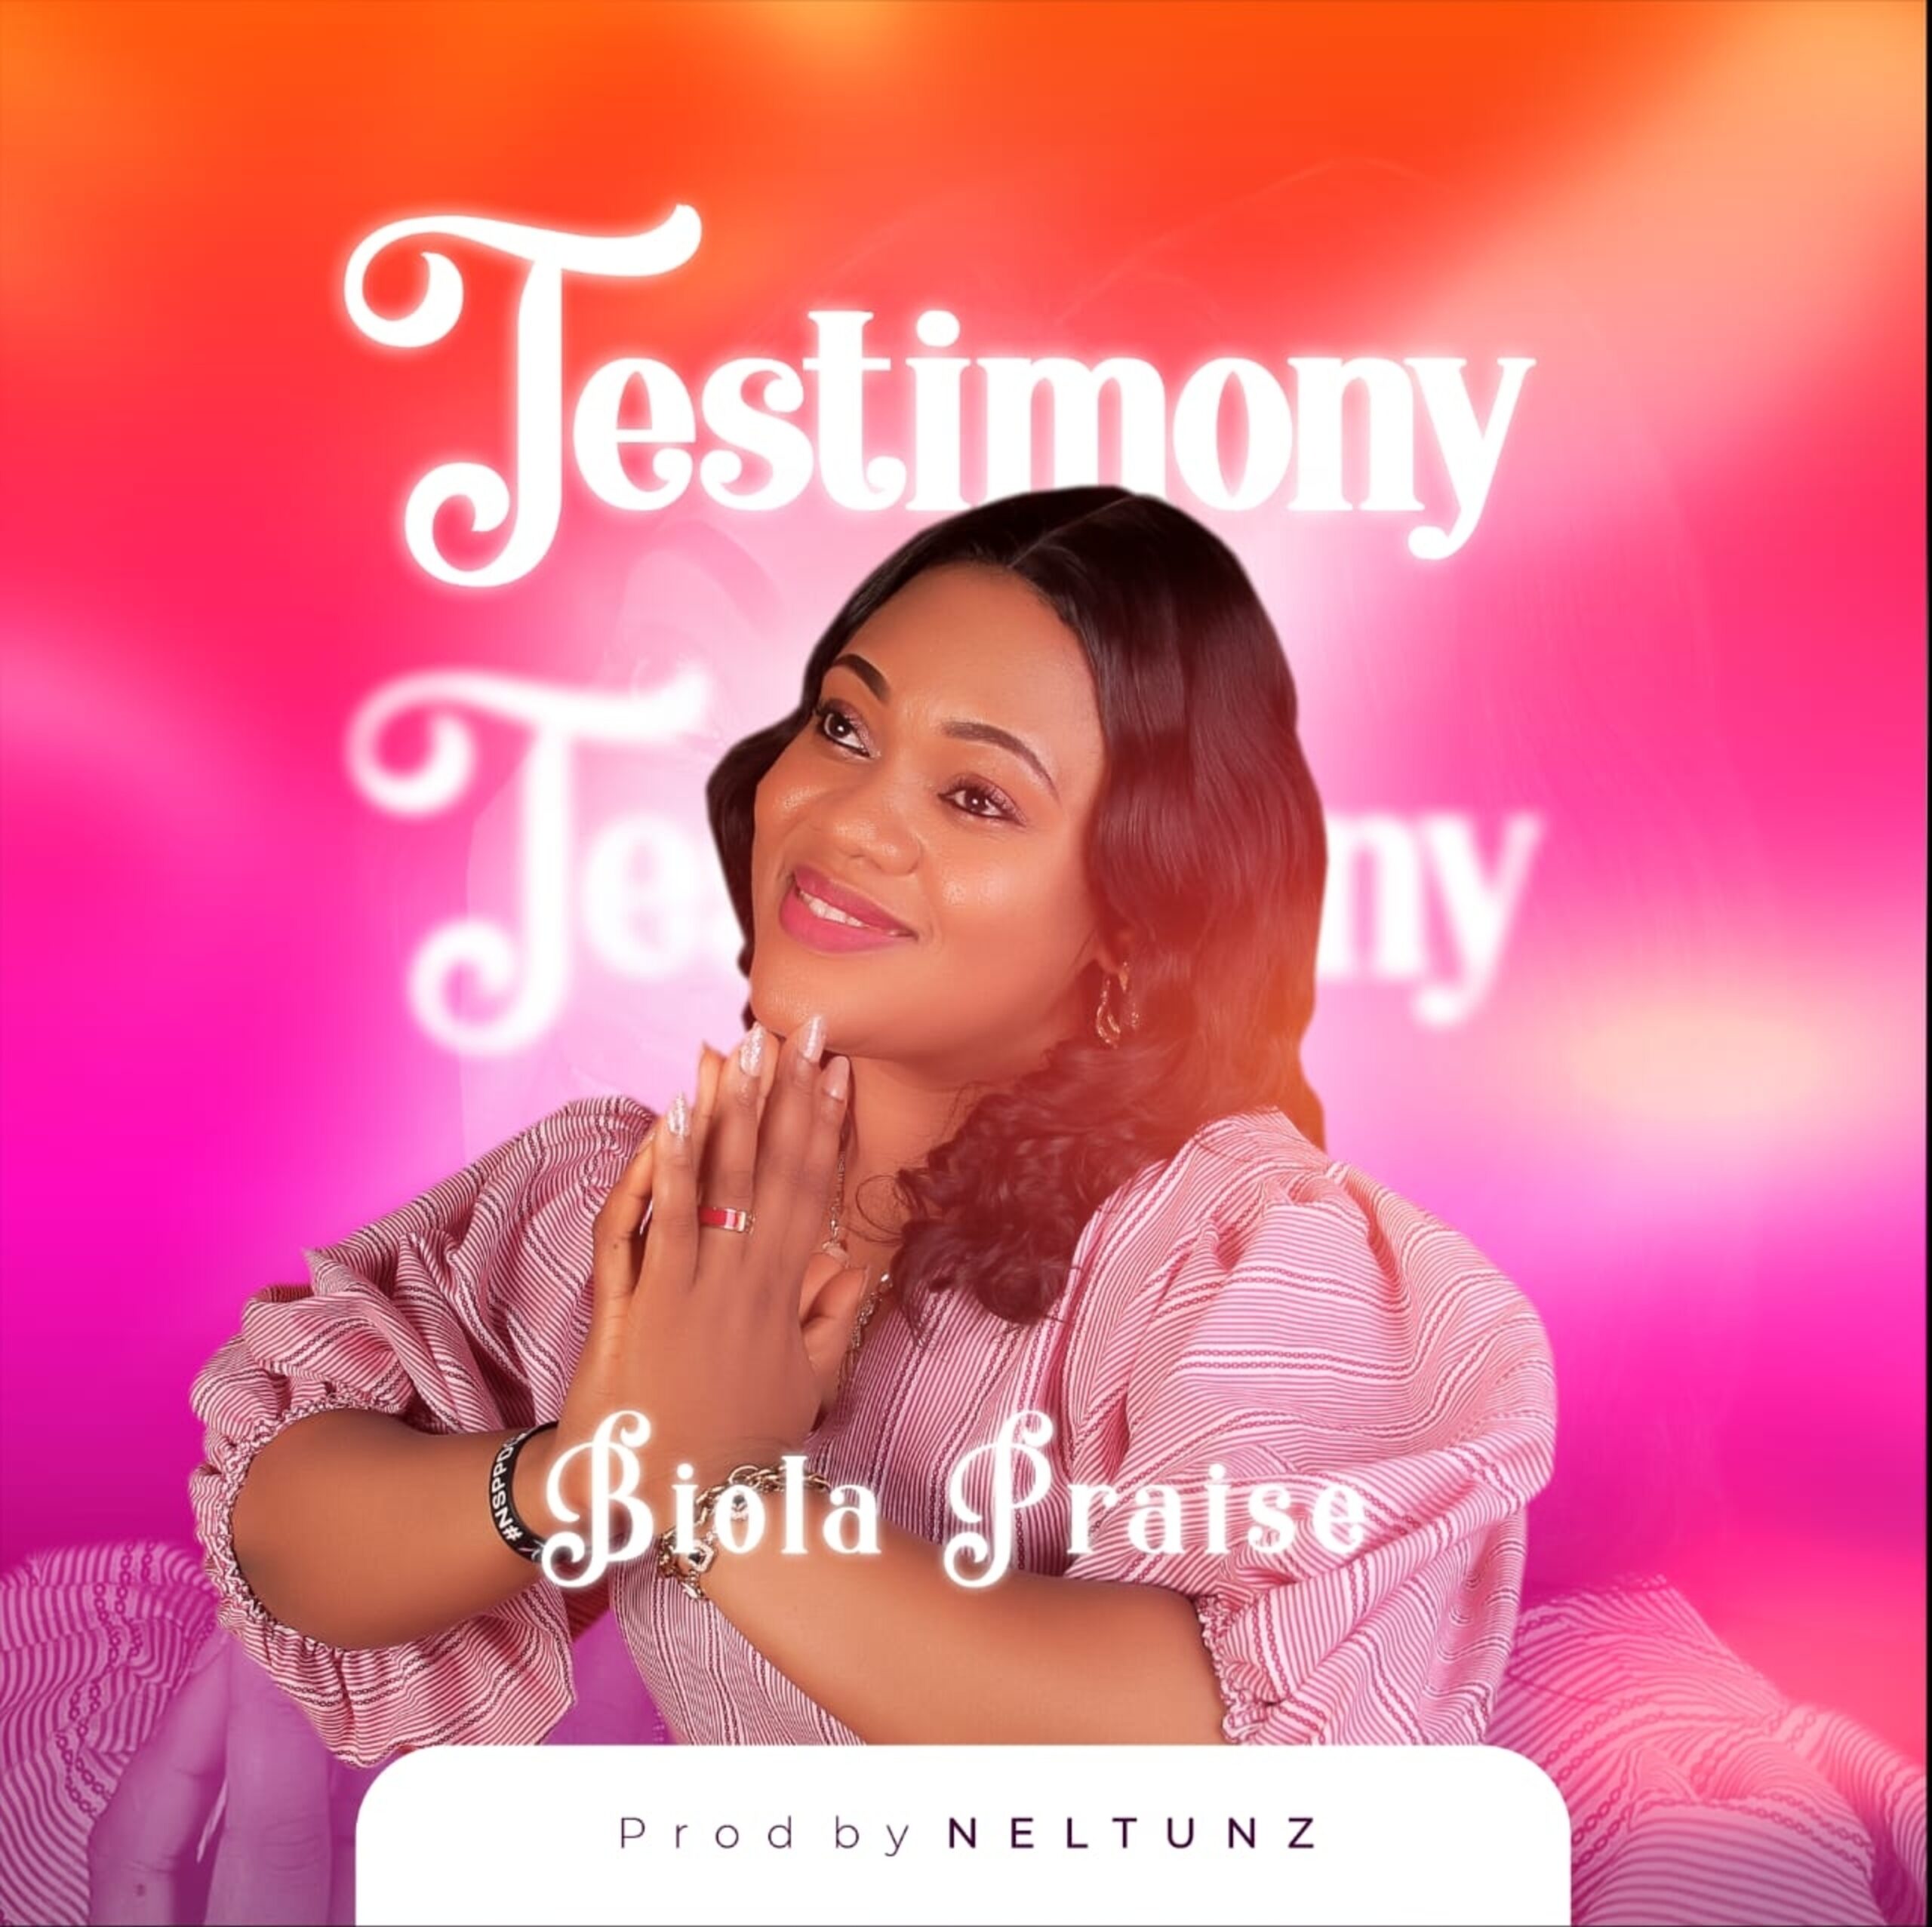 biola praise - Testimony